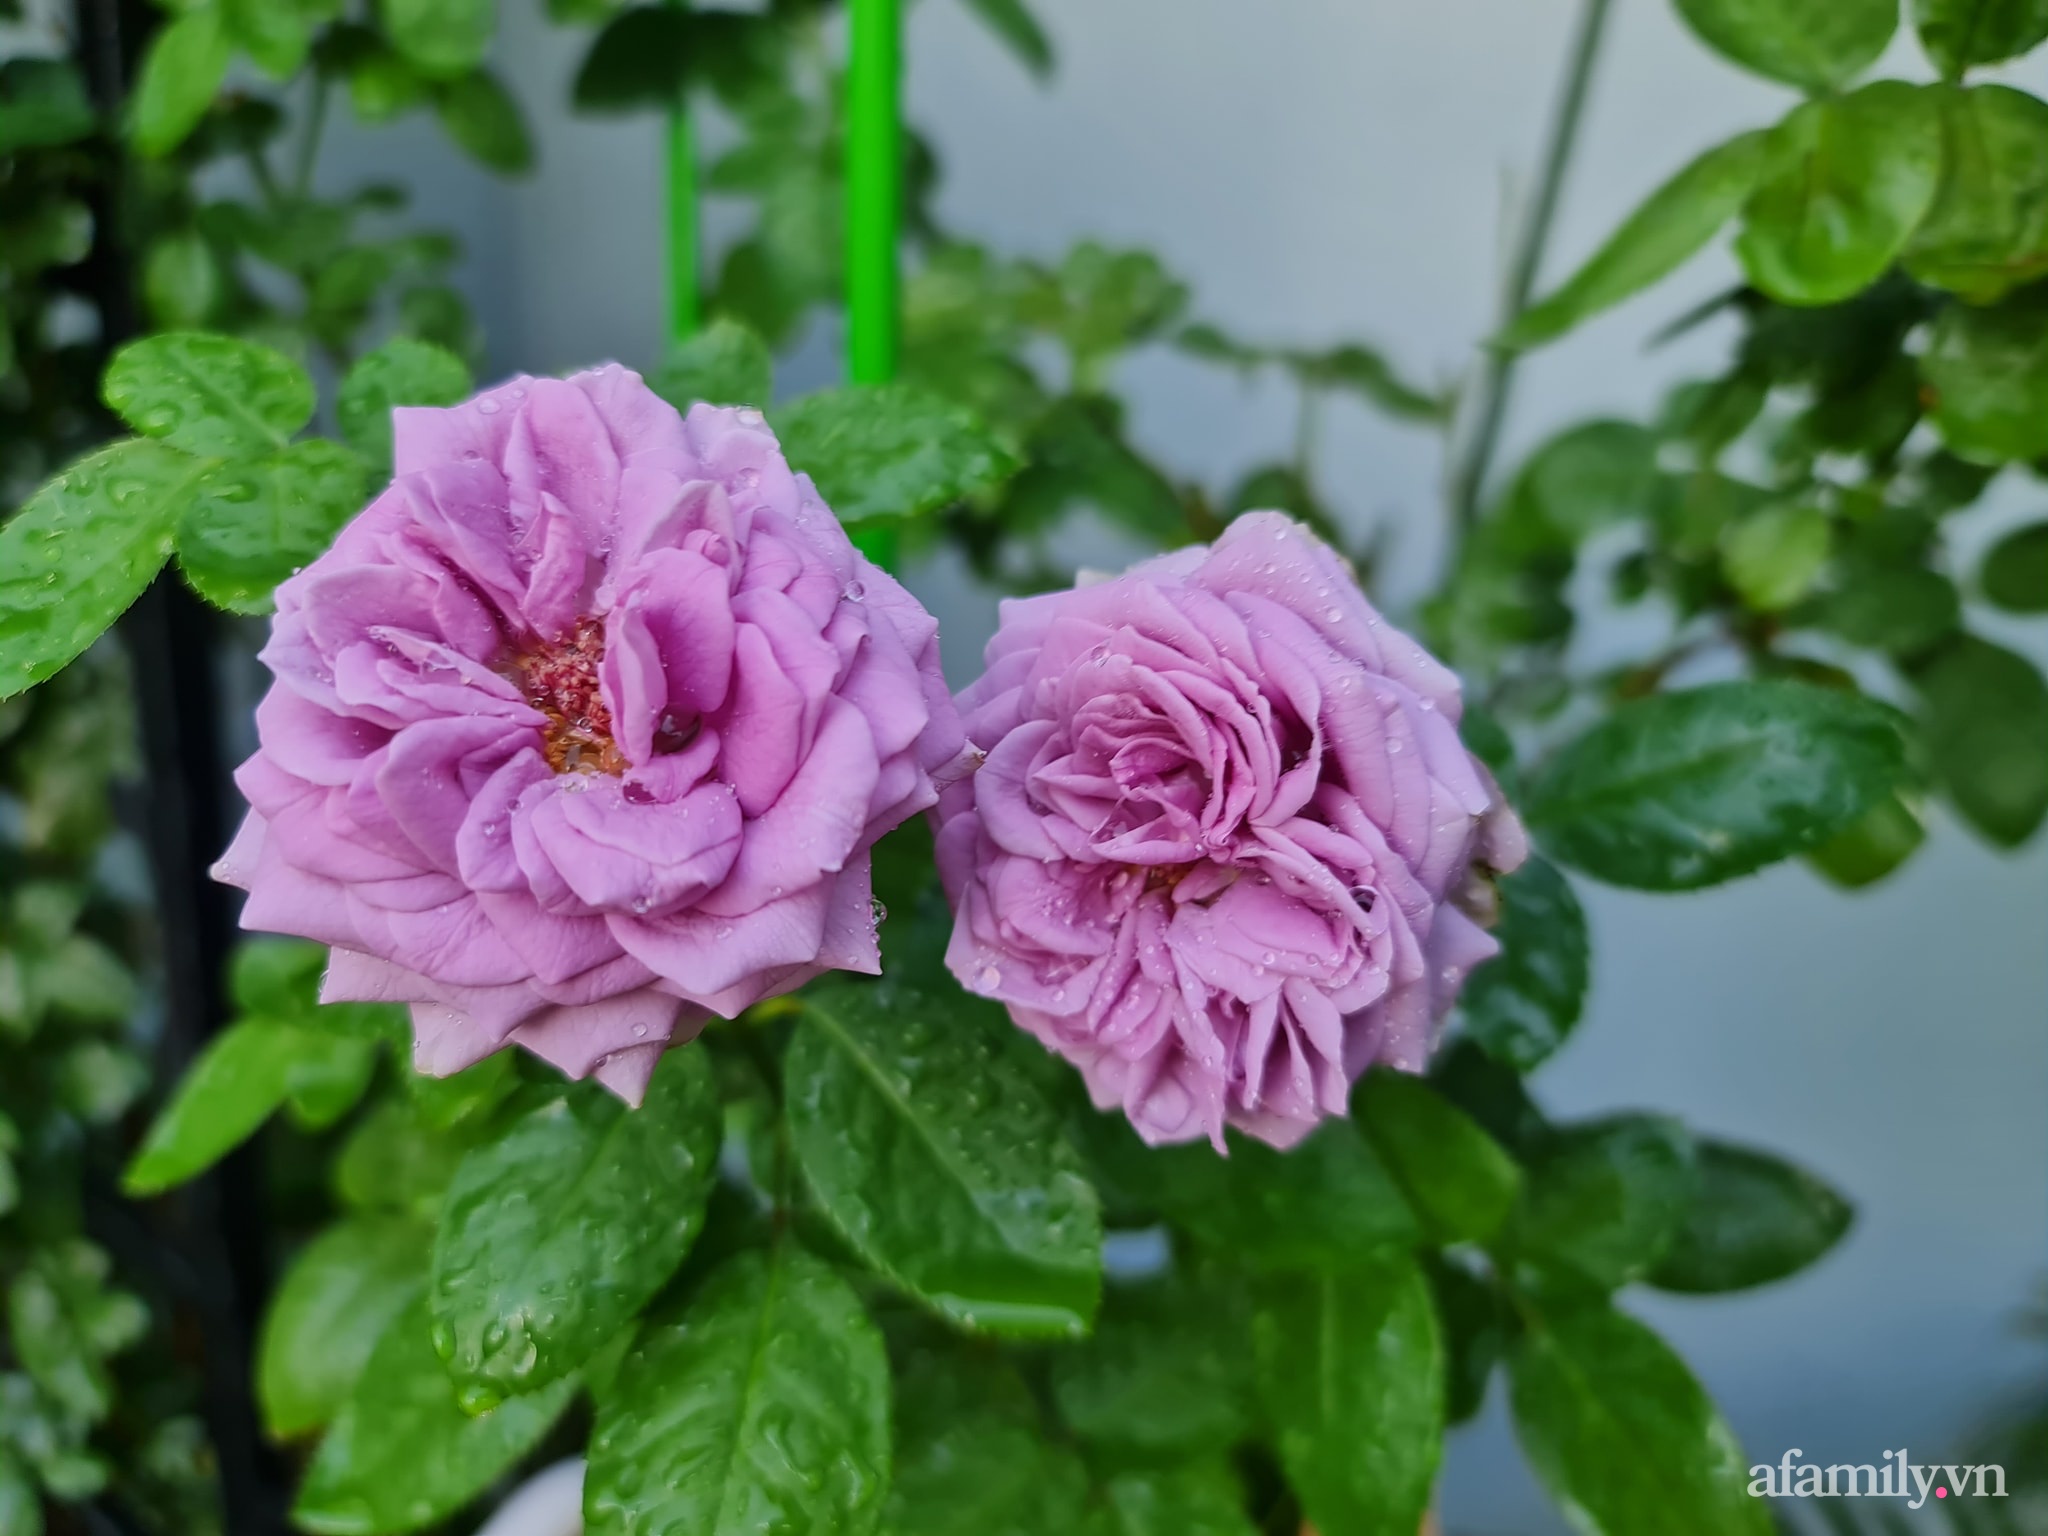 Đắm say trước vẻ đẹp ngọt lịm tim của vườn hồng rực rỡ trên sân thượng ở Bình Dương - Ảnh 19.